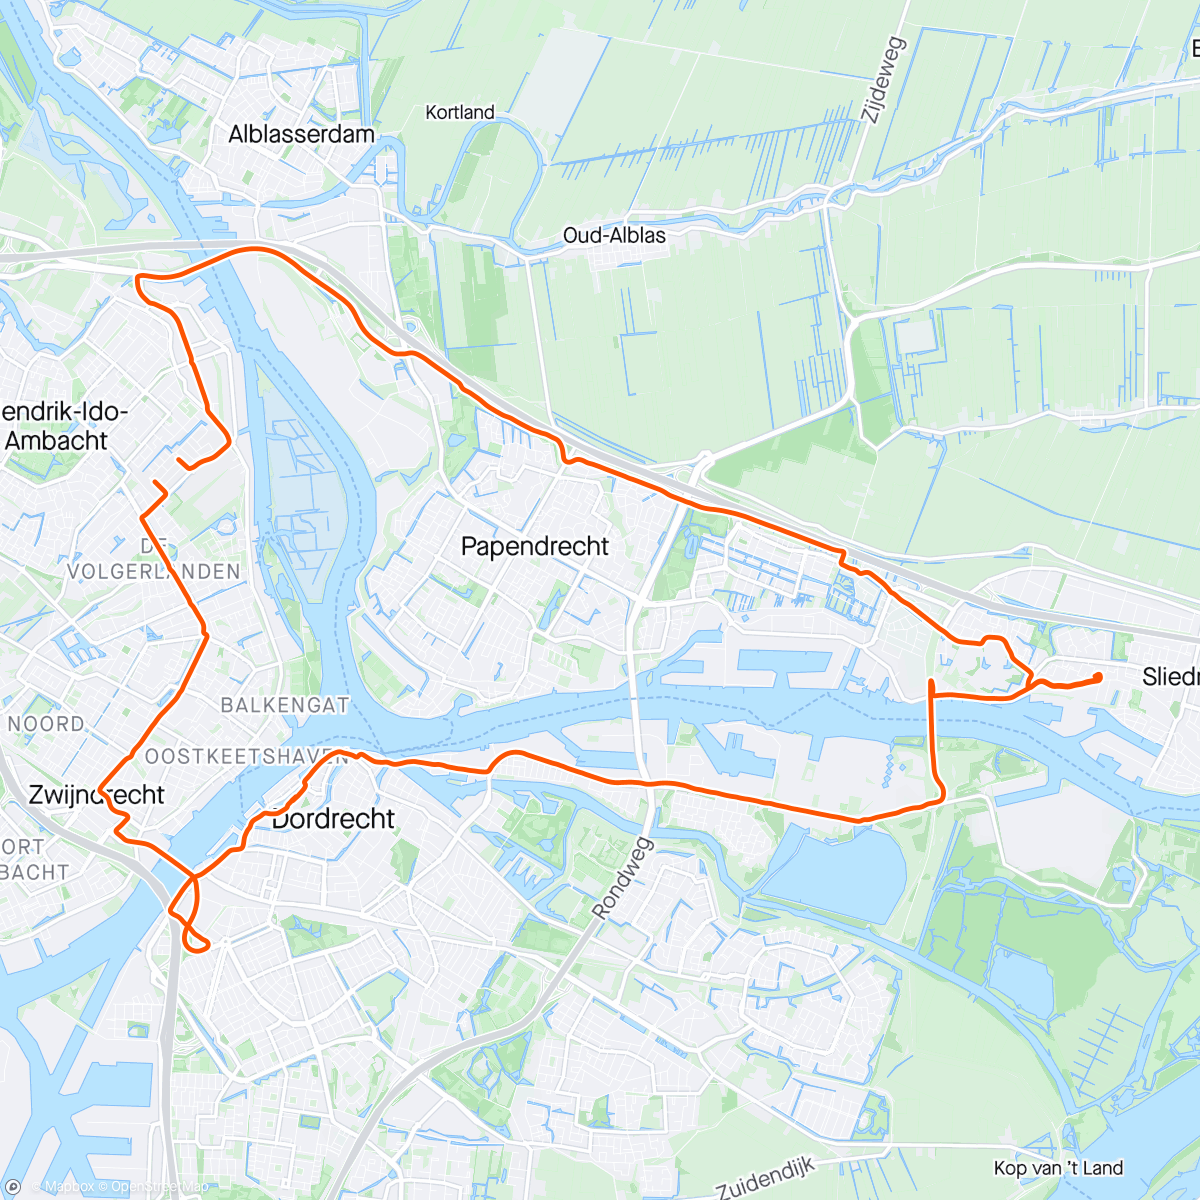 Mappa dell'attività Sliedrecht - Dordrecht met als tussenstop rondje varen met broer Kees.